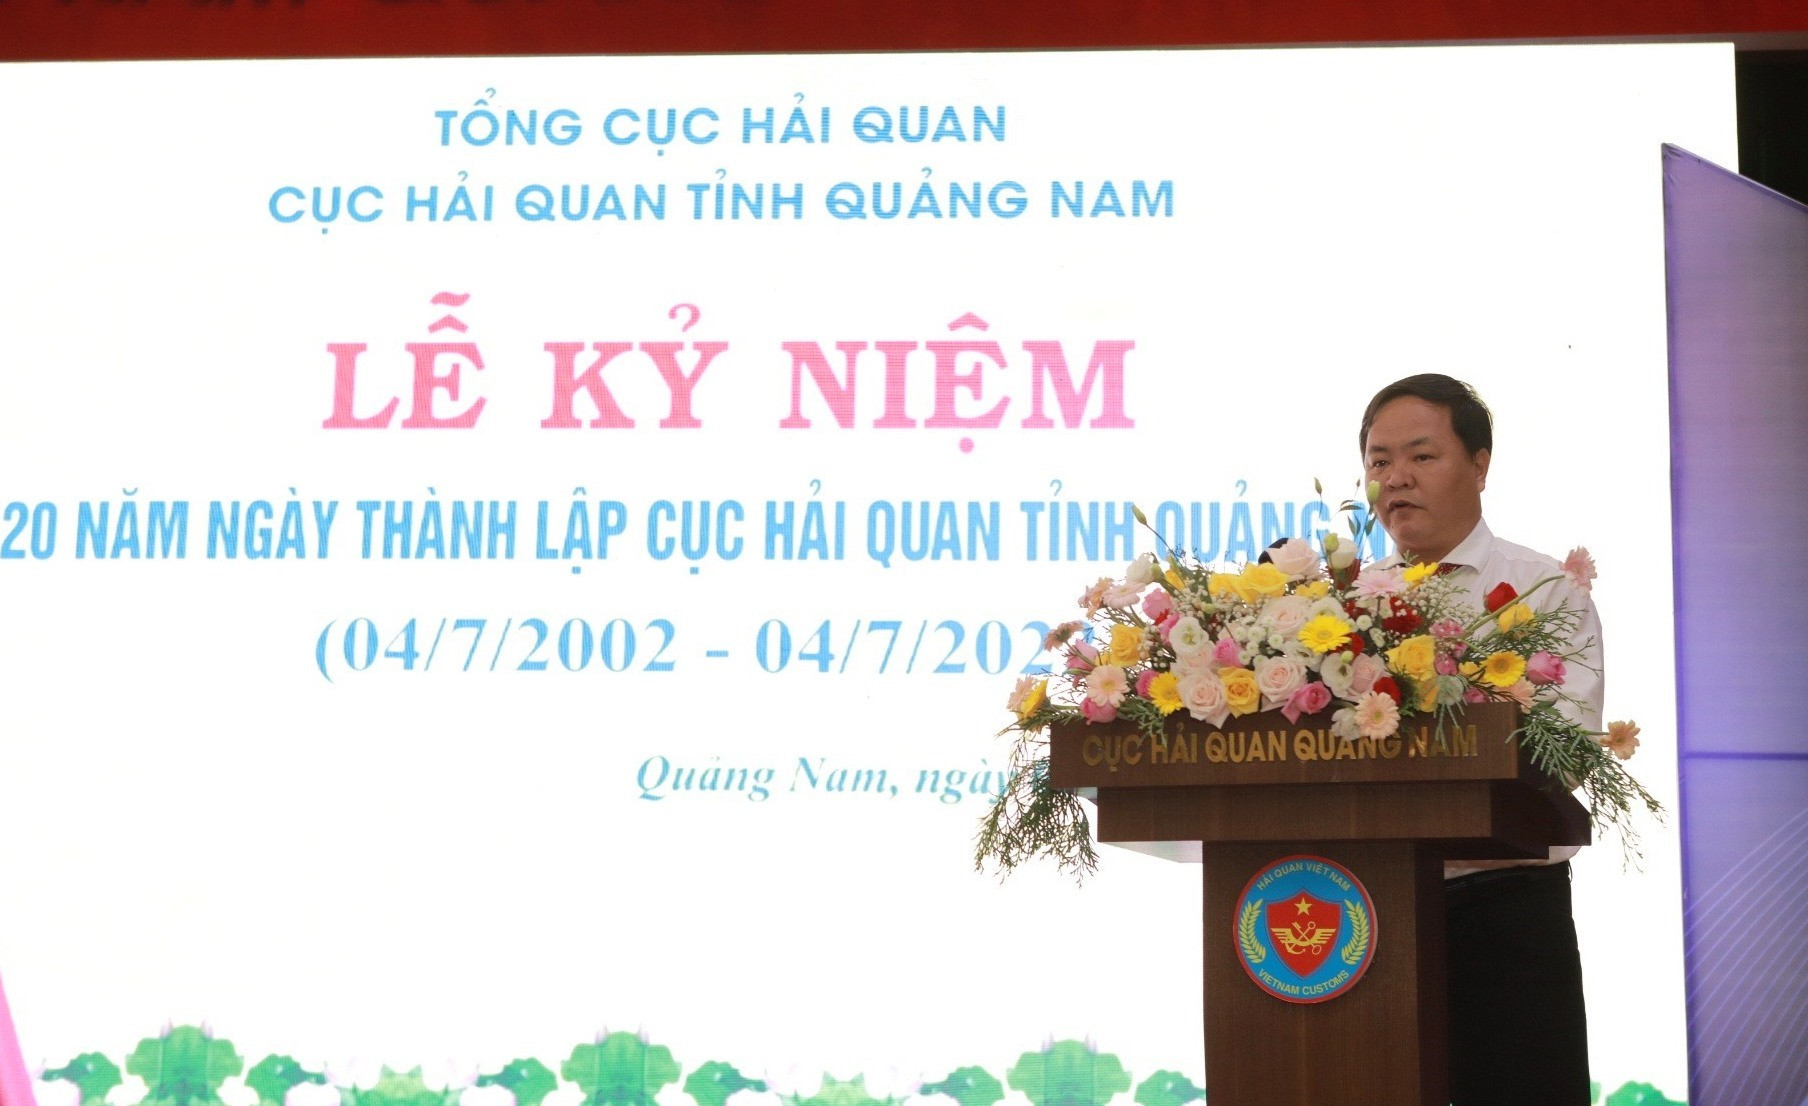 Phó Chủ tịch UBND tỉnh Nguyễn Hồng Quang phát biểu tại buổi lễ. Ảnh: Q.VIỆT